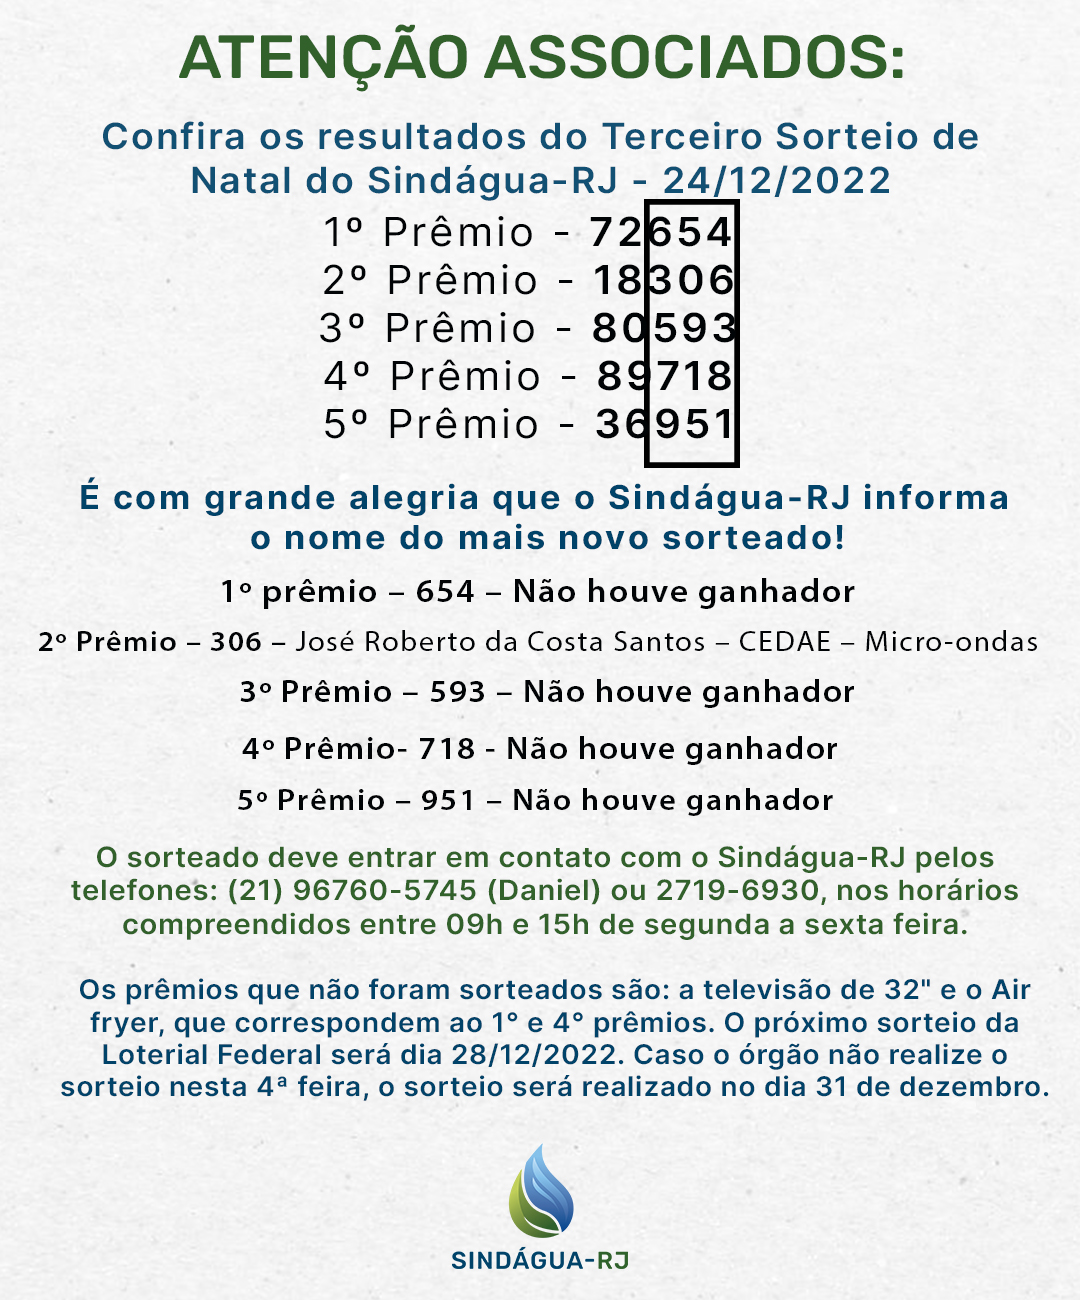 ATENÇÃO associados: Confira os resultados do Terceiro Sorteio de Natal do Sindágua-RJ – Loteria Federal 17/12/2022